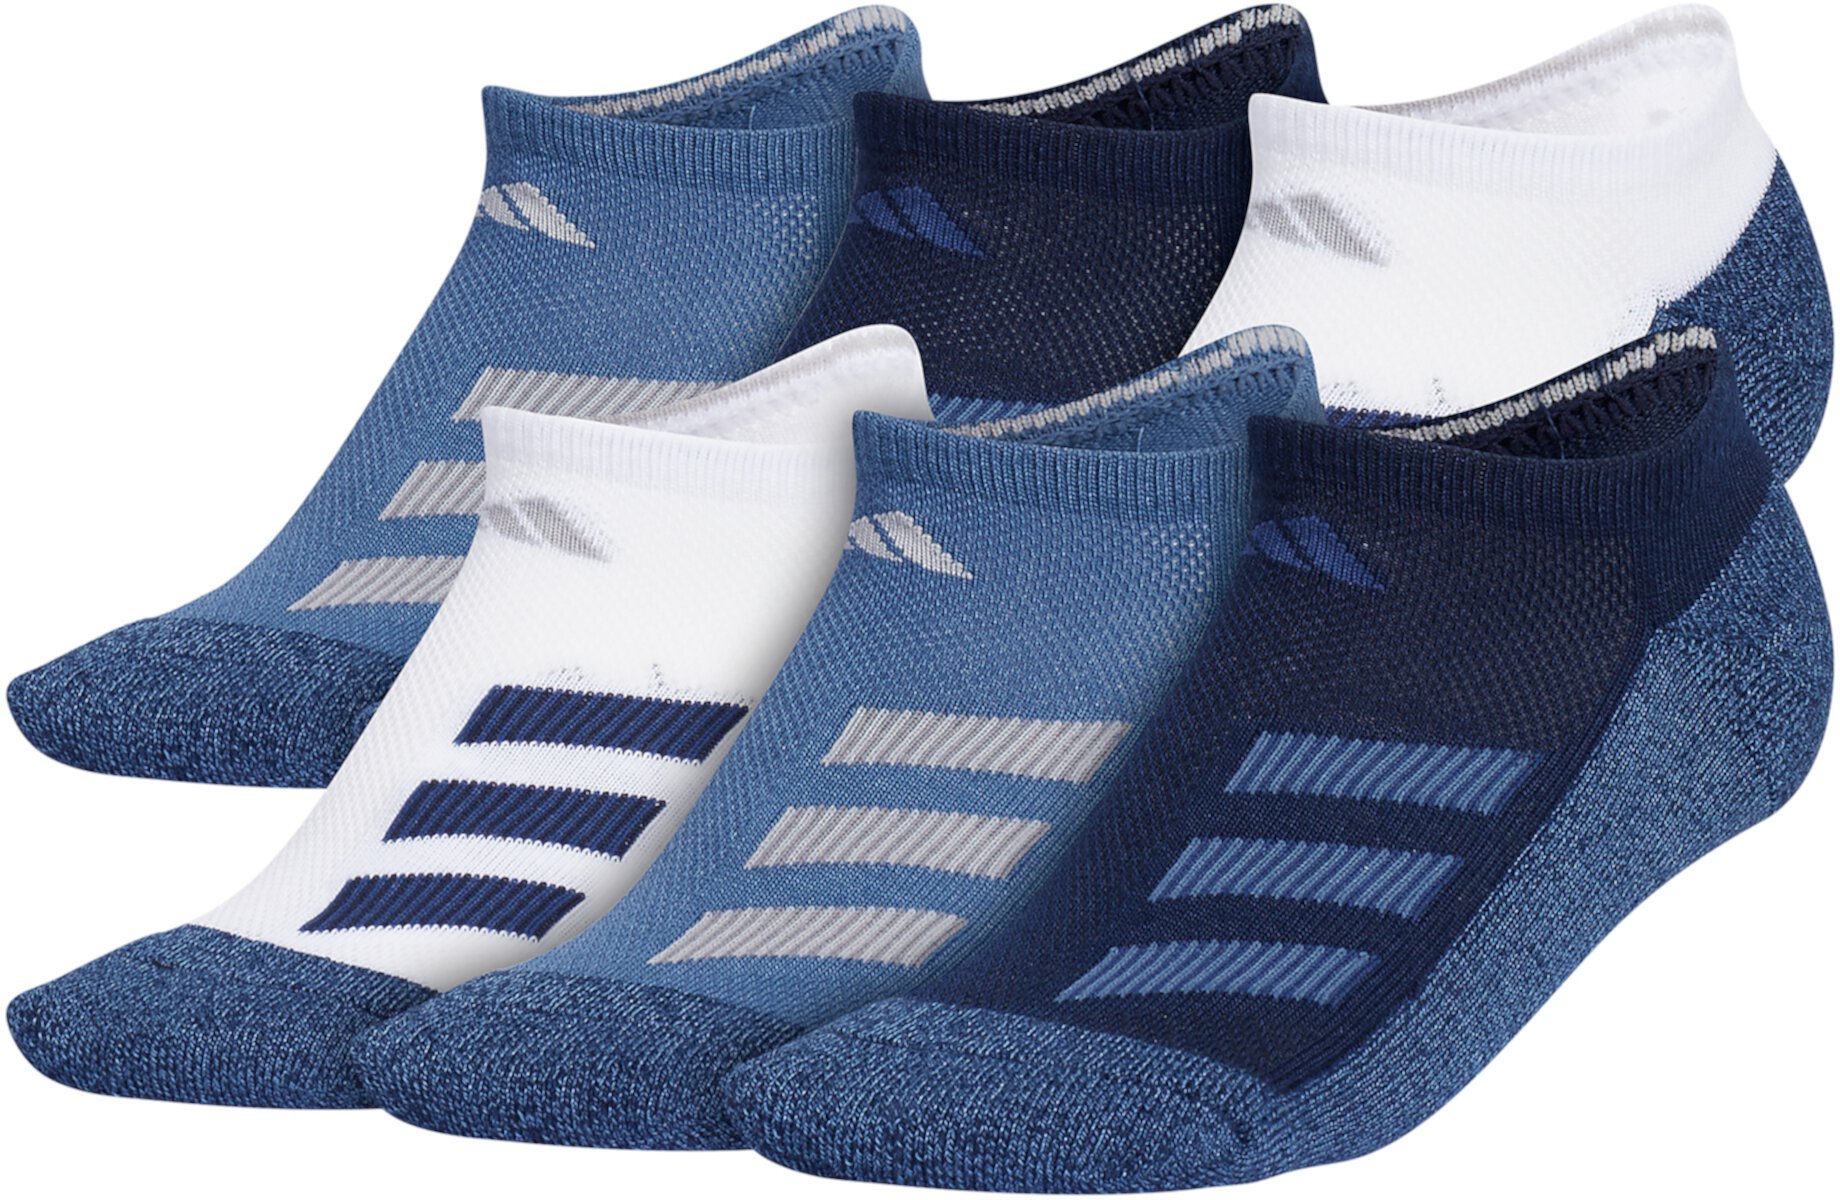 Мягкие носки с угловой полоской, 6 шт. в упаковке (маленький/большой ребенок/взрослый) Adidas